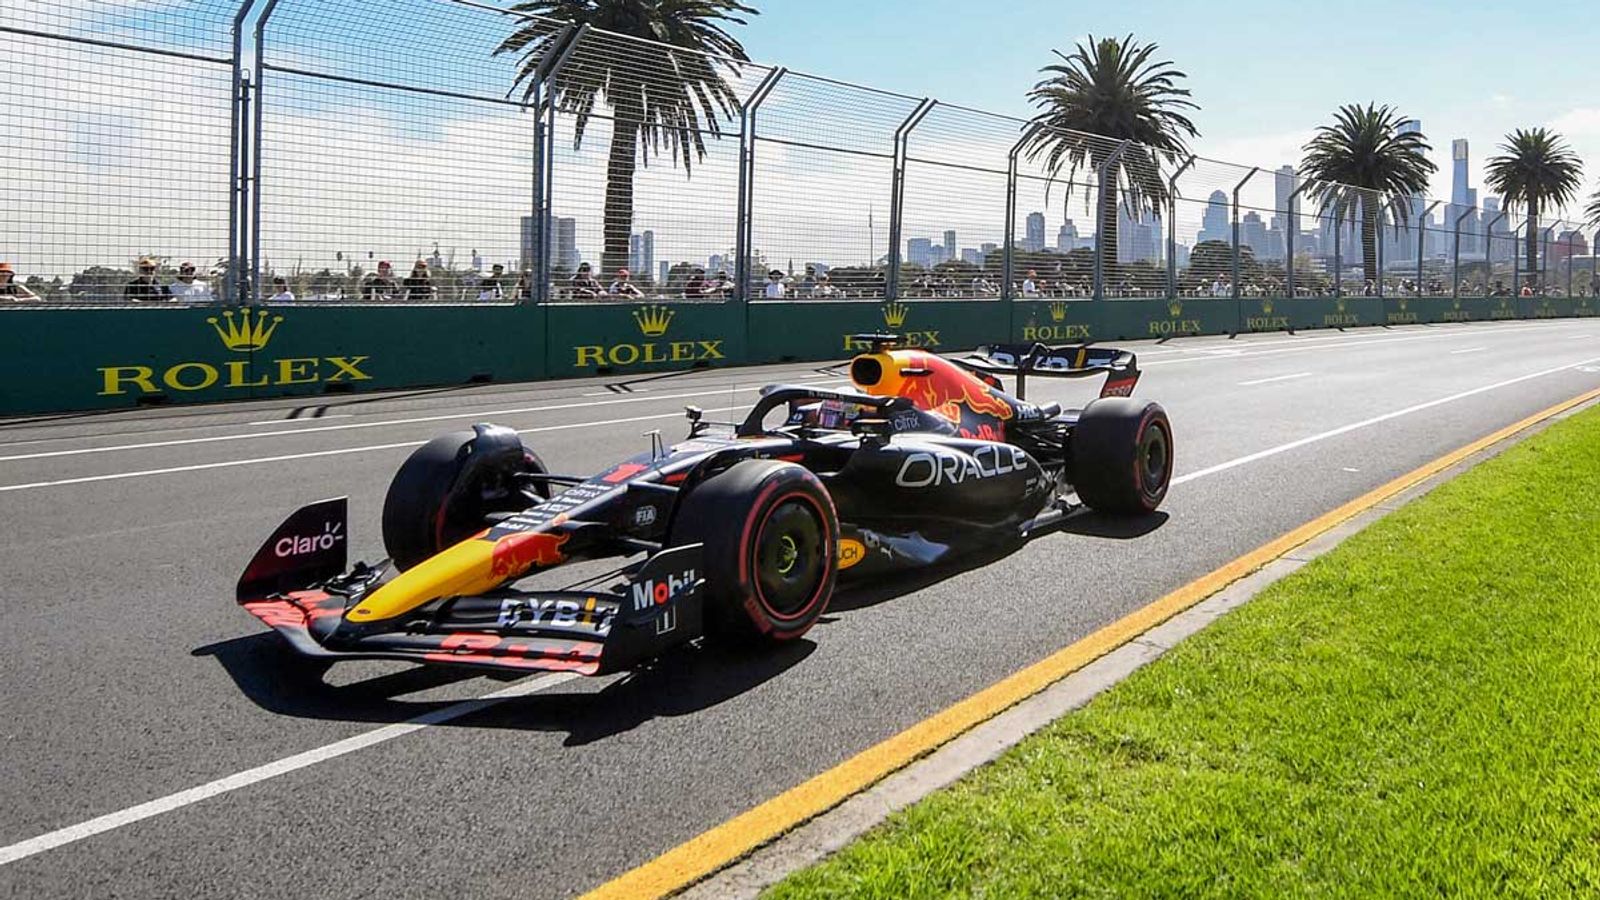 Formel 1 Grand Prix in Australien für 2